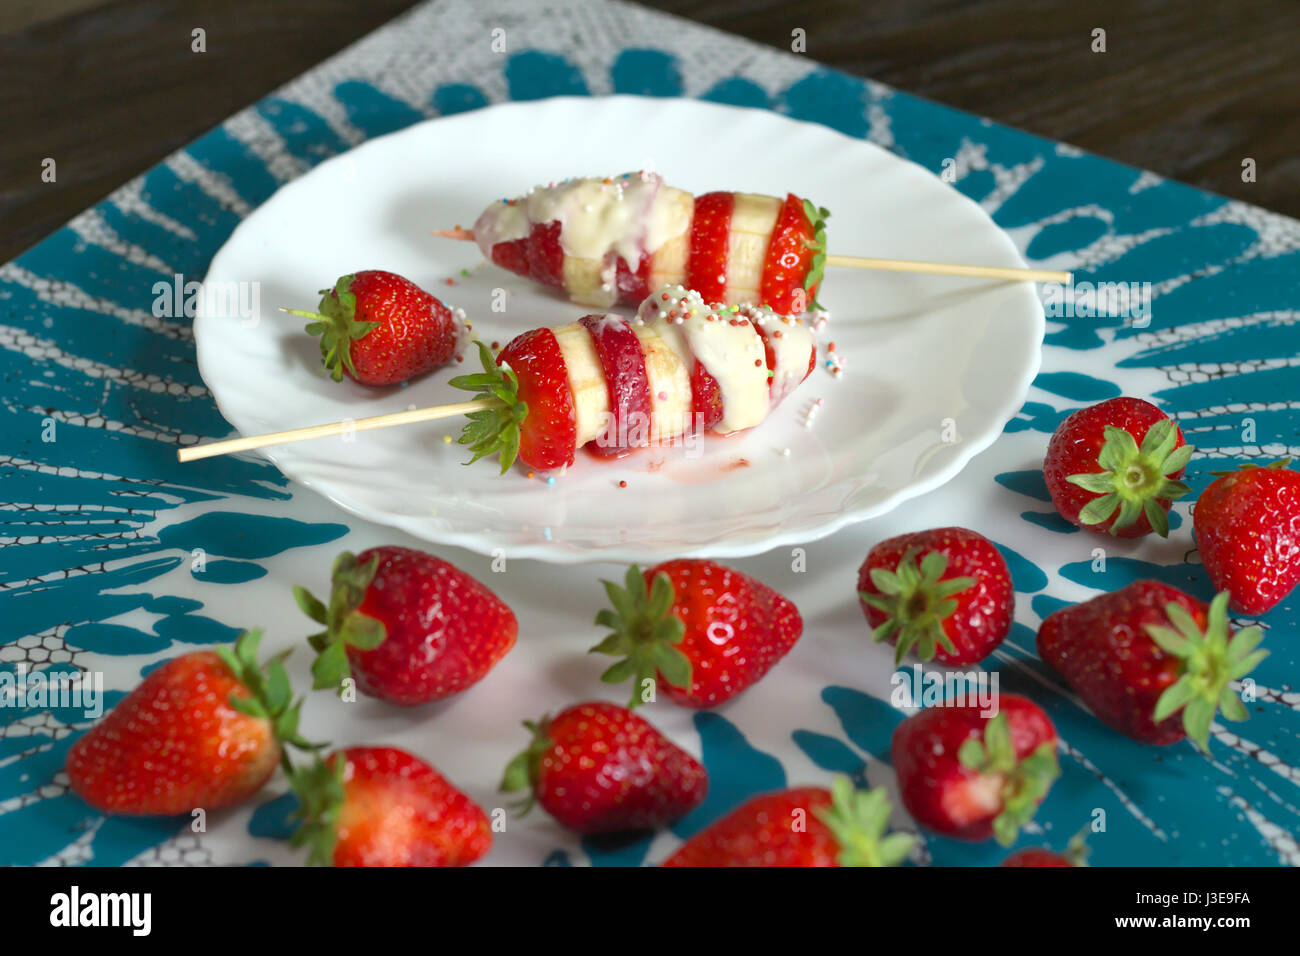 Erdbeere und Banane Spieße vorbereitet Rezept mit weißer Schokolade und bunten Zucker Dekorationen - rote Erdbeeren im Vordergrund servierbereit Stockfoto